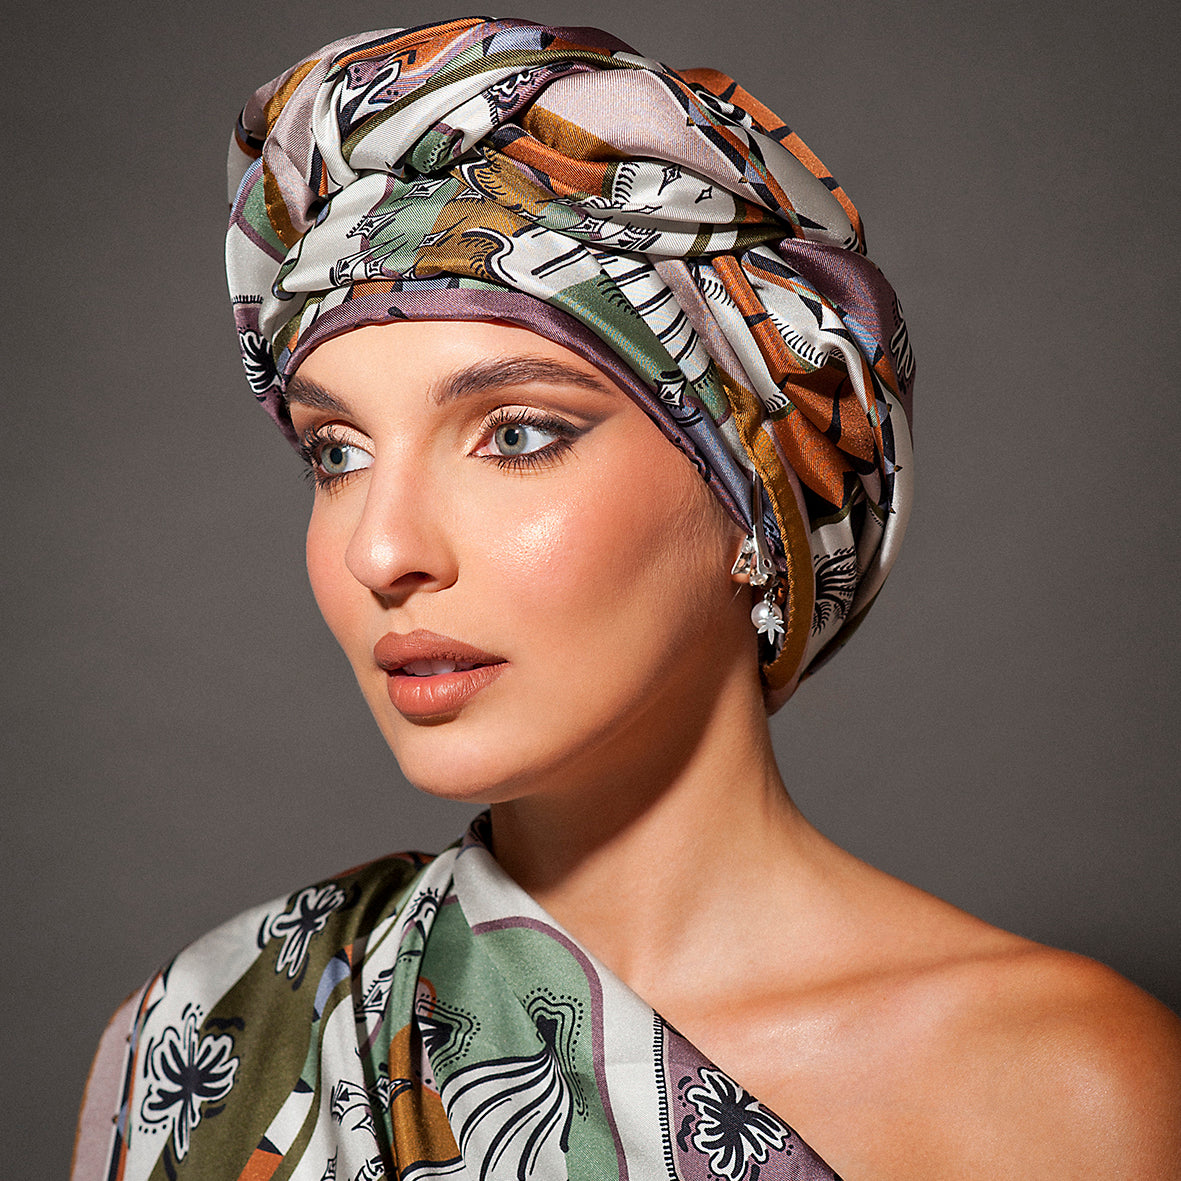 stupenda modella con viso in primo piano vestita da un accessorio di seta e da un turbante annodato in testa dai colori naturali avorio e terra